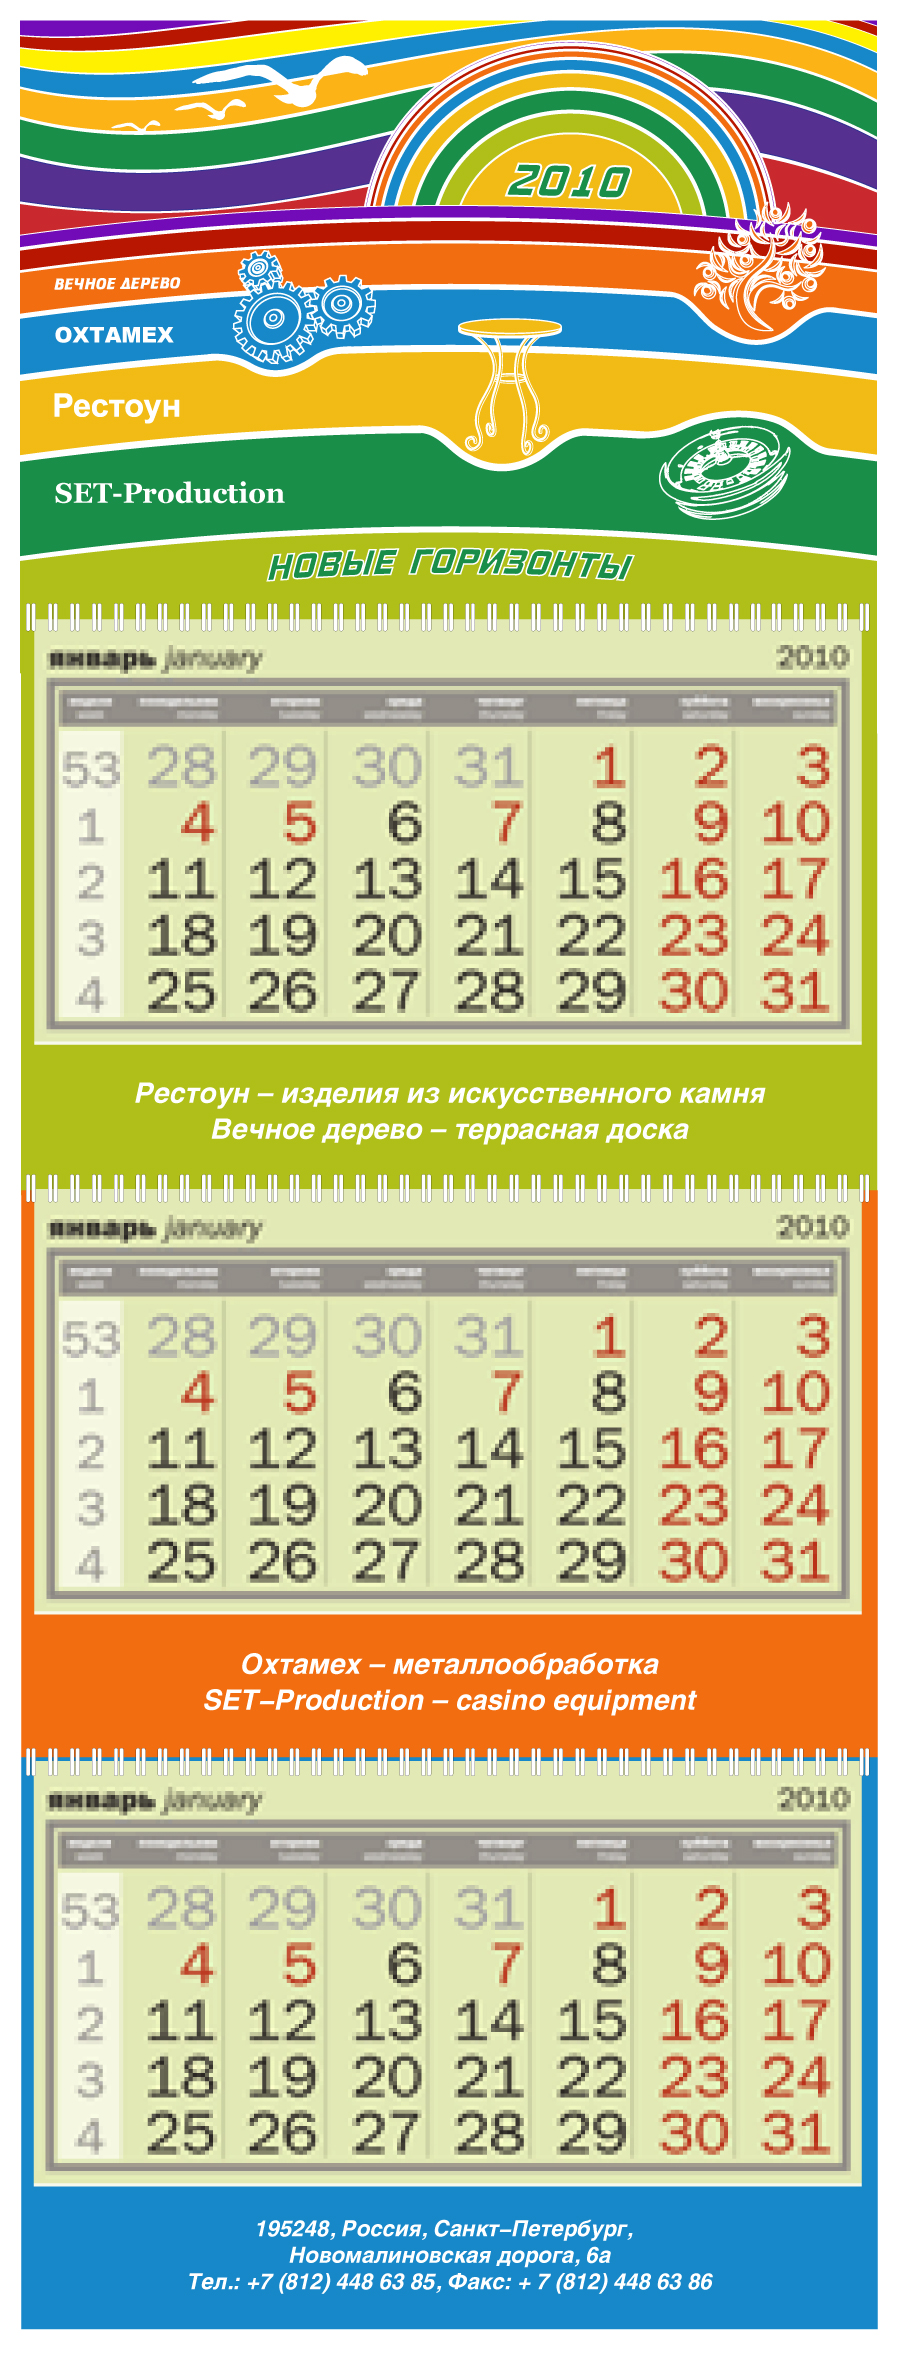 Корпоративный календарь Трио компании Сет-Продакшн